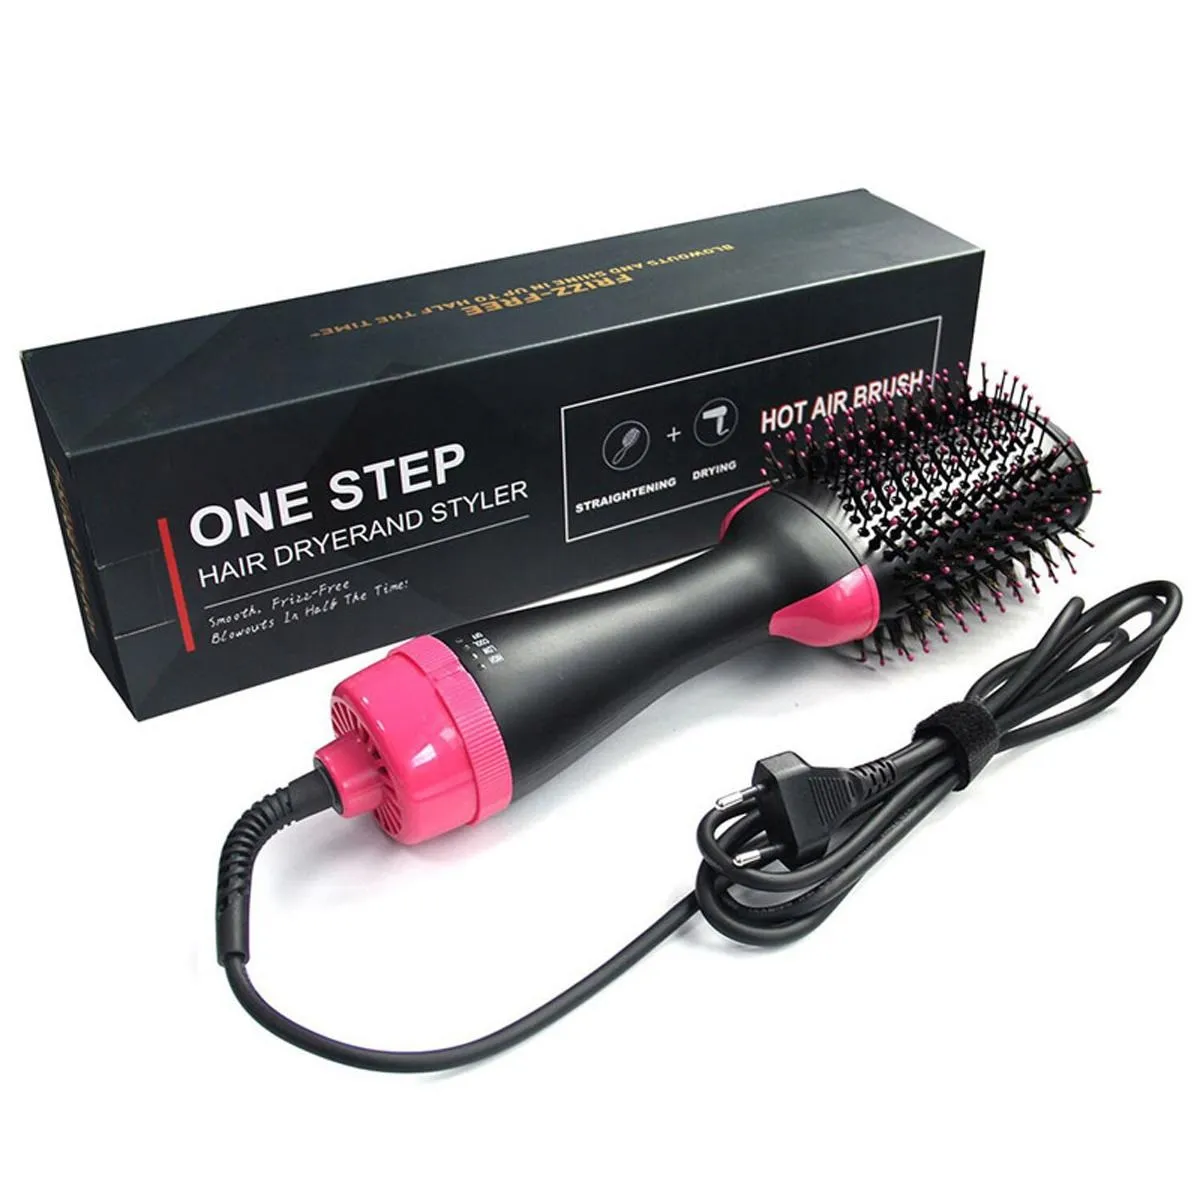 Ein Schritt Volume Einstellen von Haartrockner und Salon Heißluftpaddel Modellierbürste Anion Generator Haarglätter Haarleiter DHL